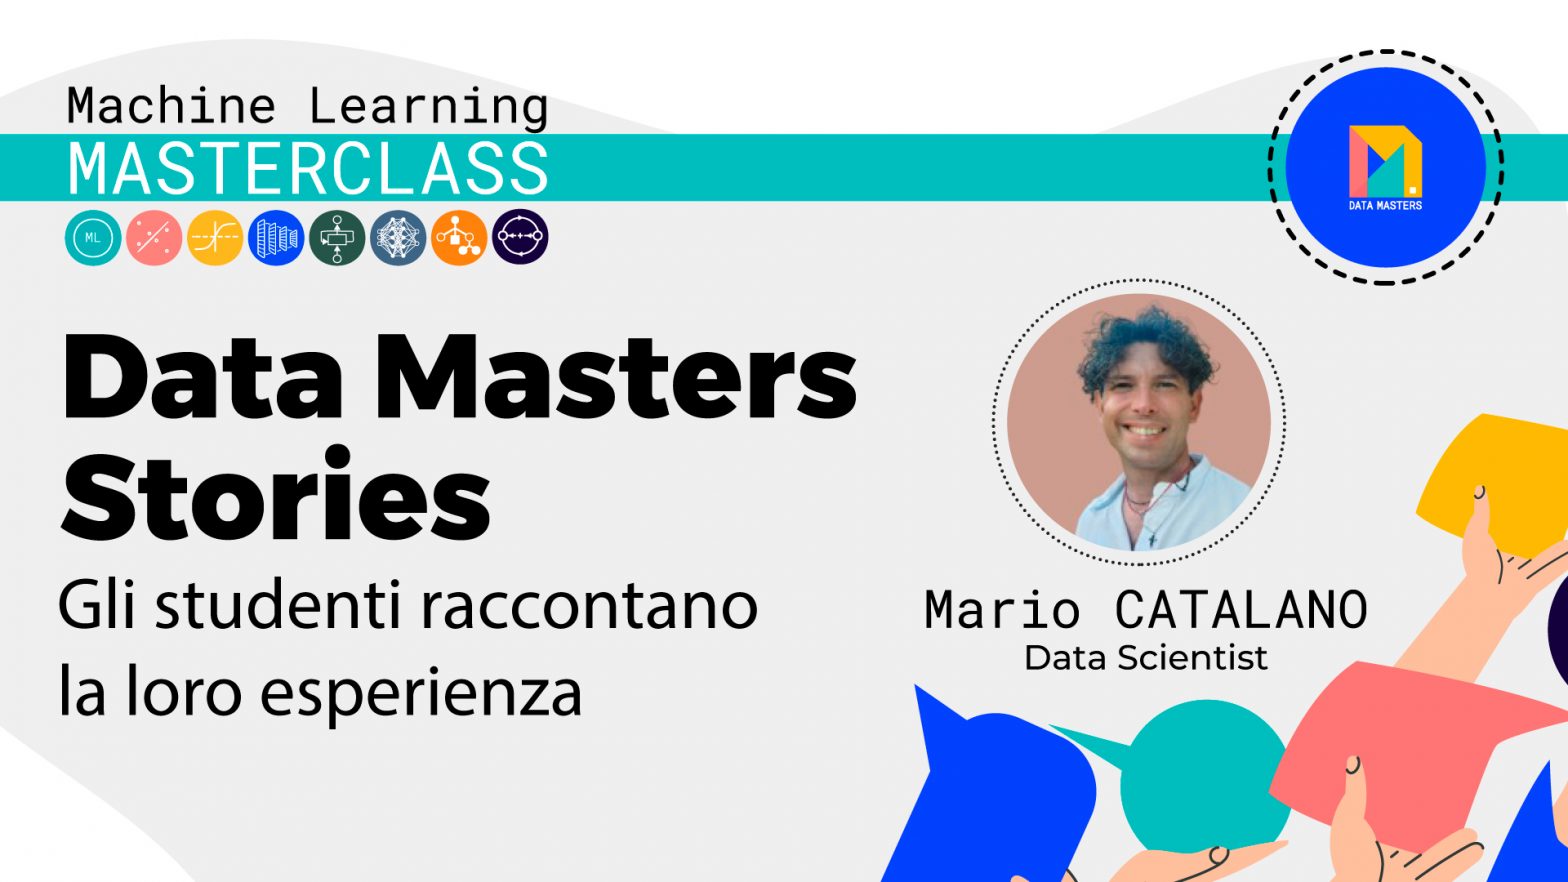 Copertina della serie Data Masters Stories mostrando un ritratto sorridente di Mario Catalano, Data Scientist, con icone di machine learning e il logo di Data Masters su sfondo colorato